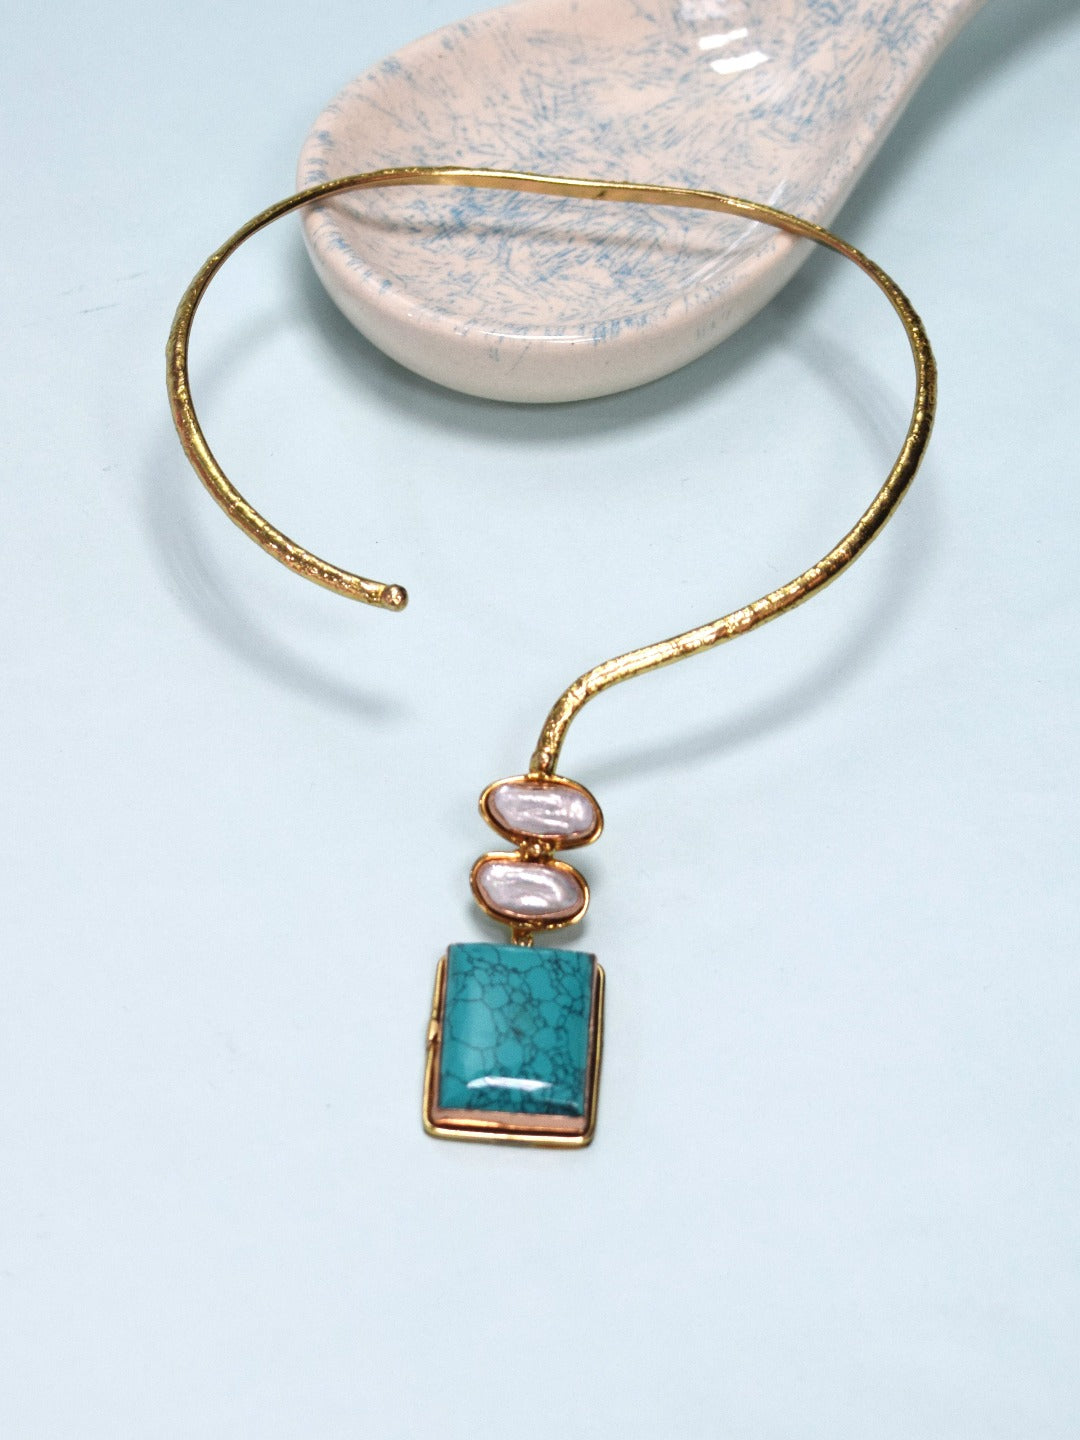 Blue turquoise pendant necklace gift stone gemstone India | Ubuy